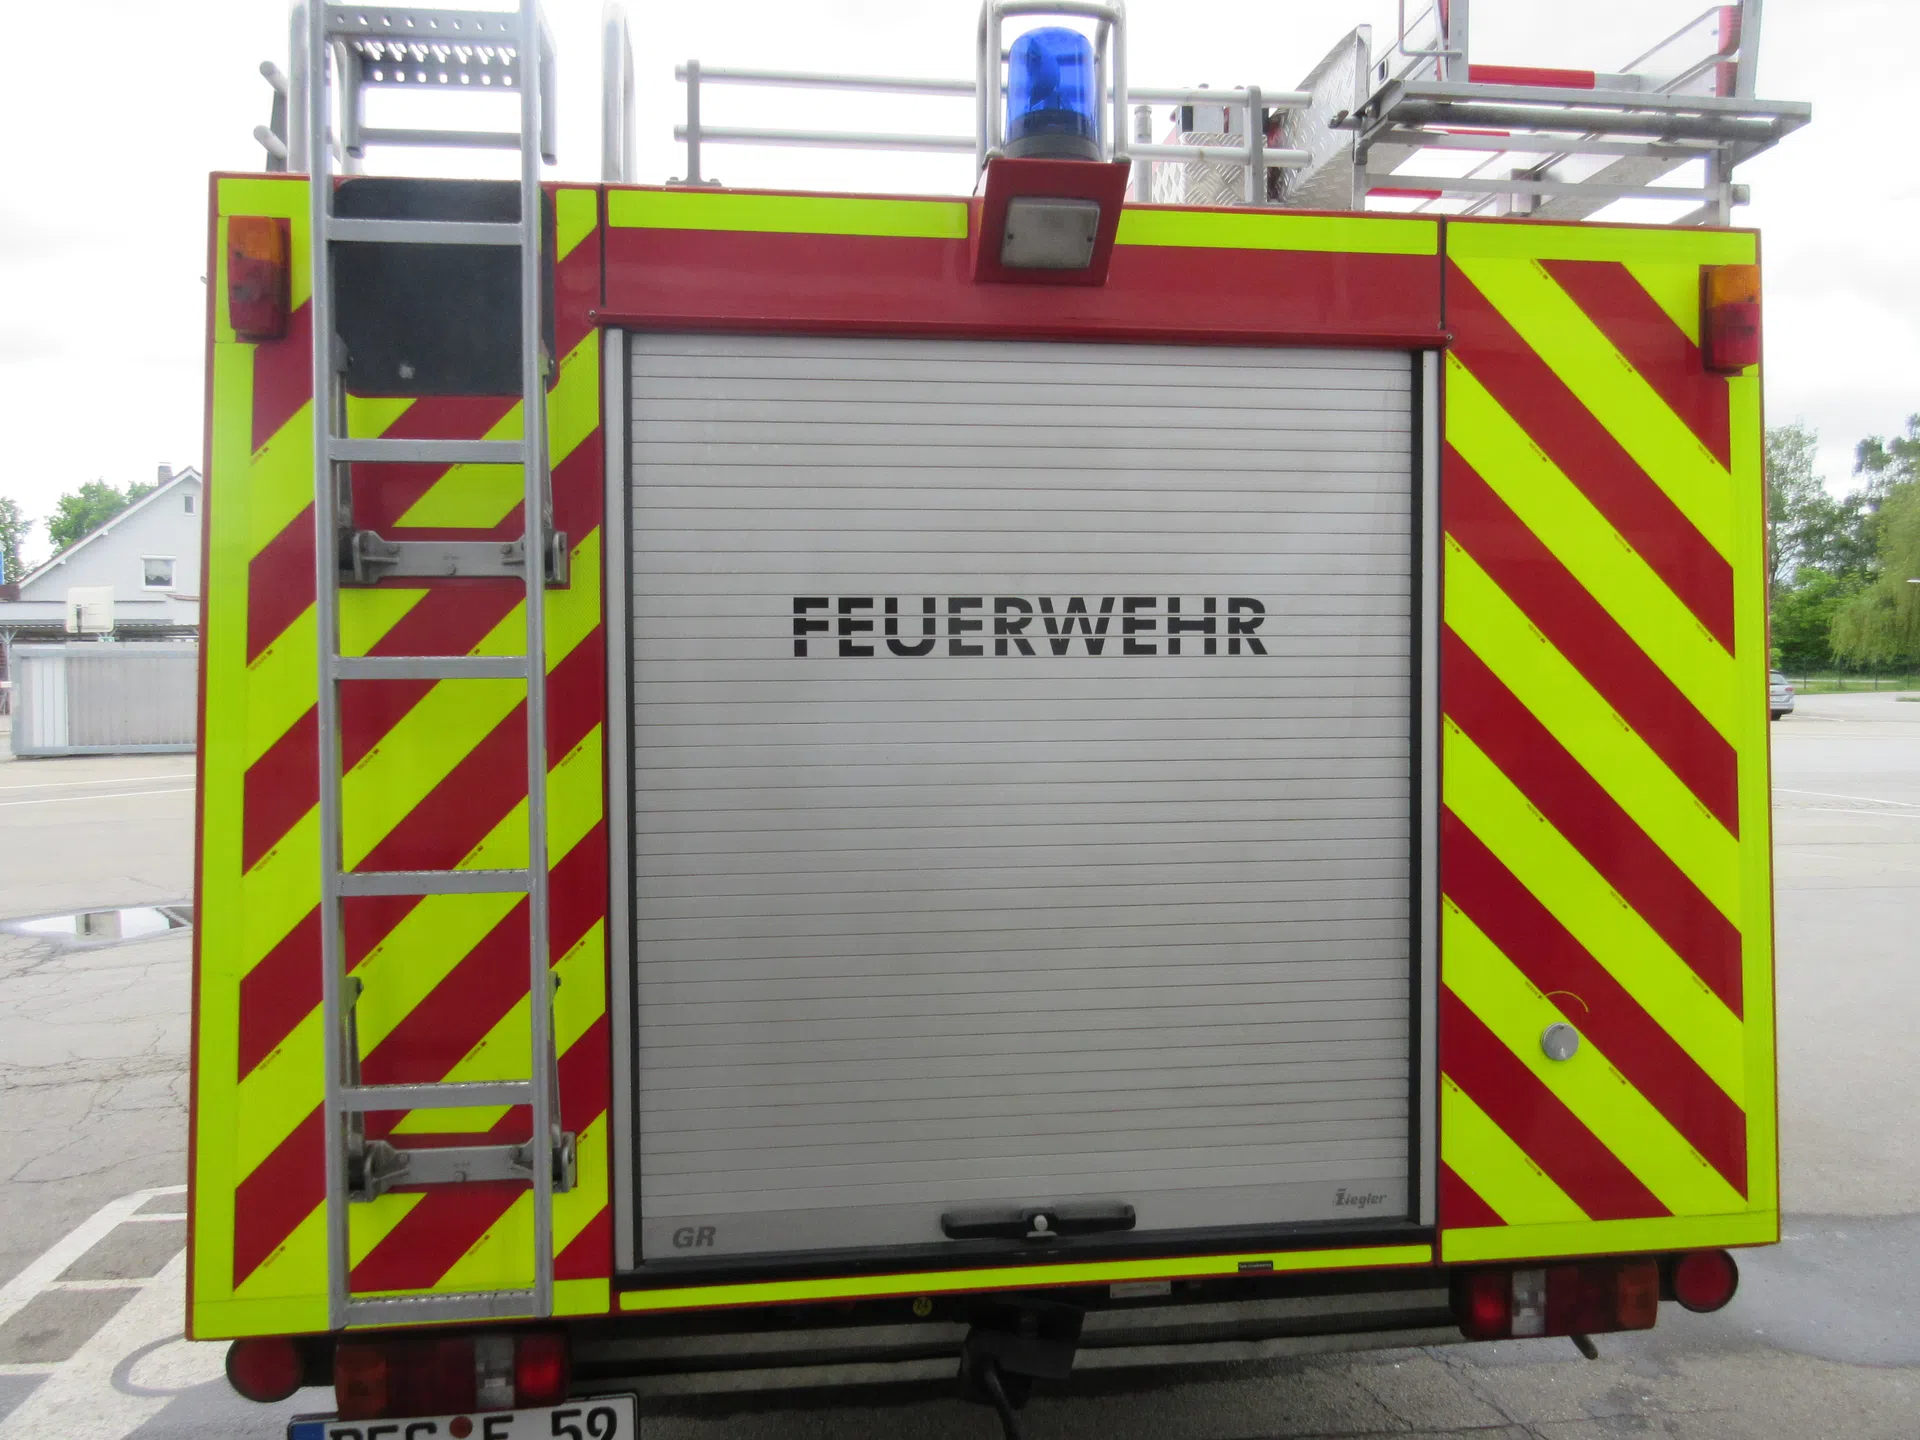 Freiwillige Feuerwehr Deggendorf e.V. - Dieses Schild sehen sie häufig auf  Privatfahrzeugen kurz nachdem der Alarm bei der Freiwilligen Feuerwehr  eingegangen ist. Da die Einsatzkräfte innerhalb weniger Minuten ausrücken  müssen sie schnellst